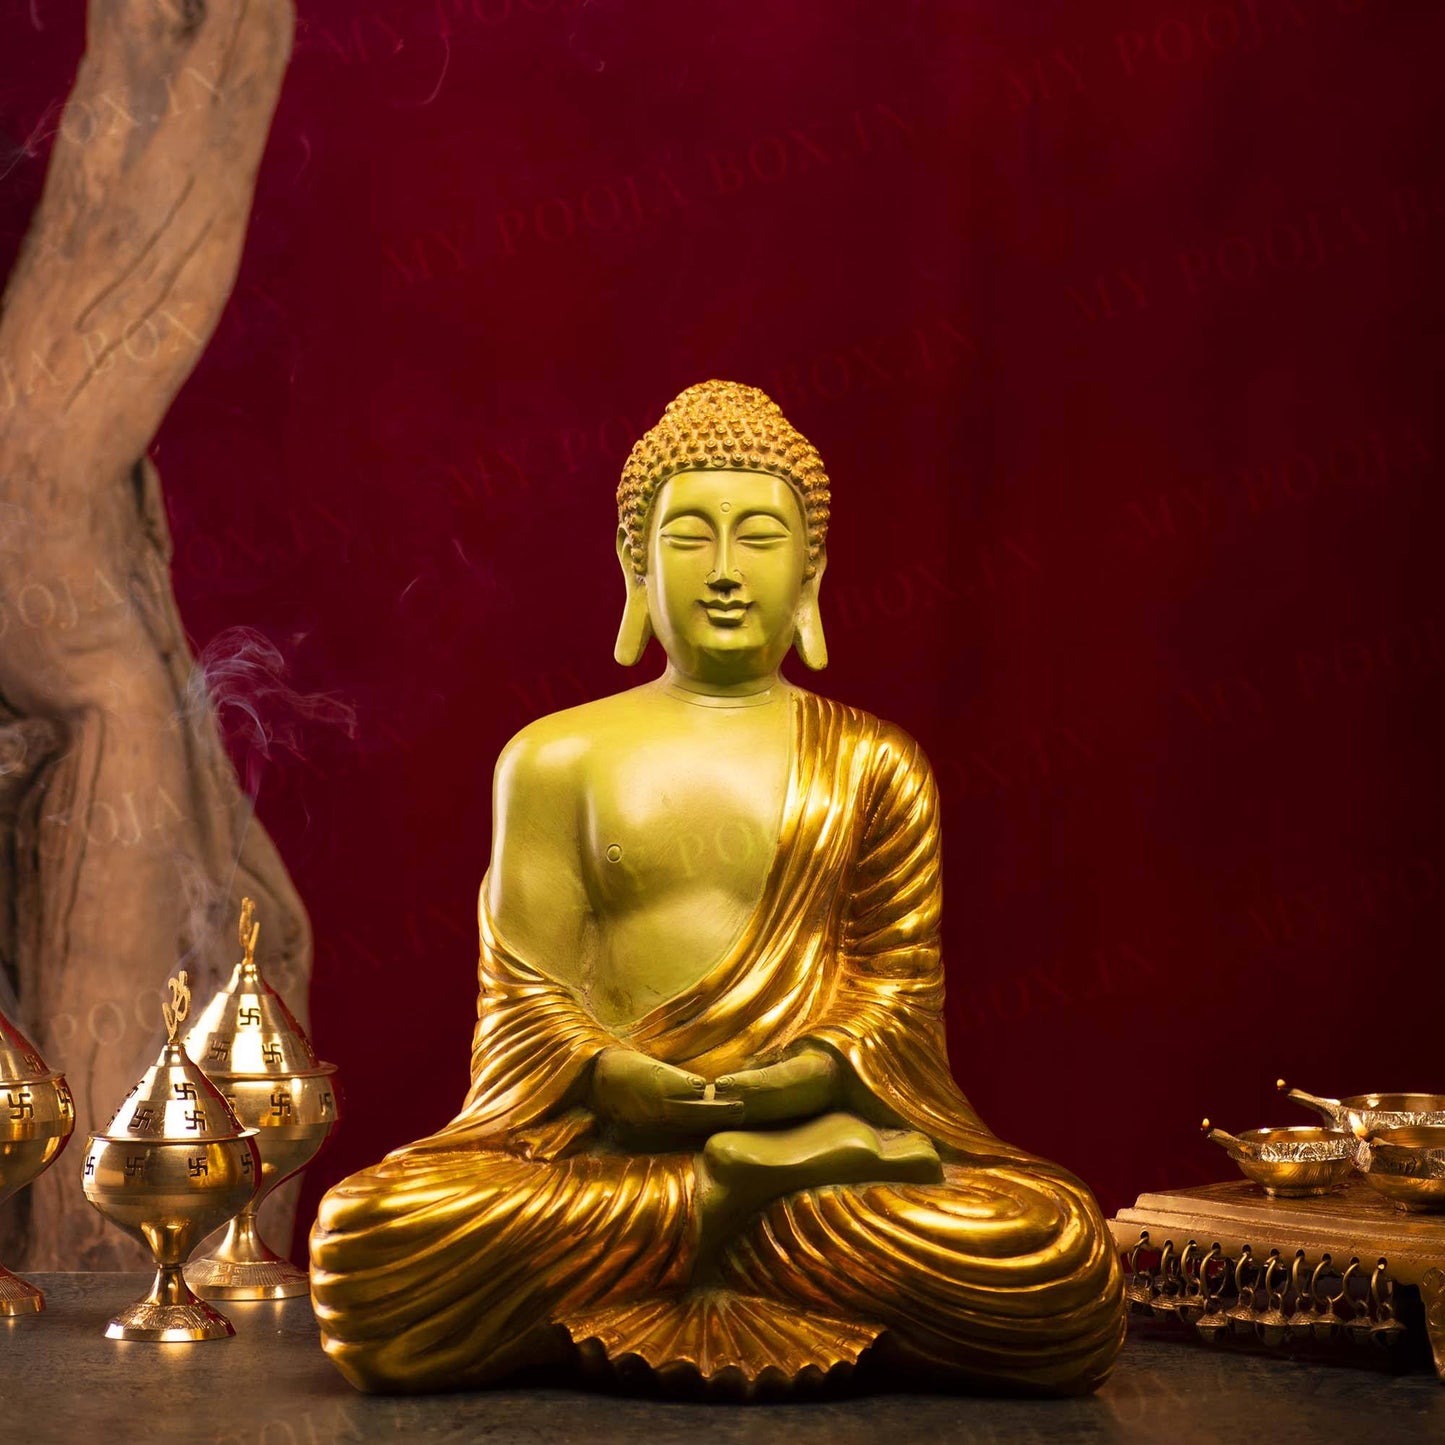 Antique Brass Green And Golden Buddha Idol (9KGS)